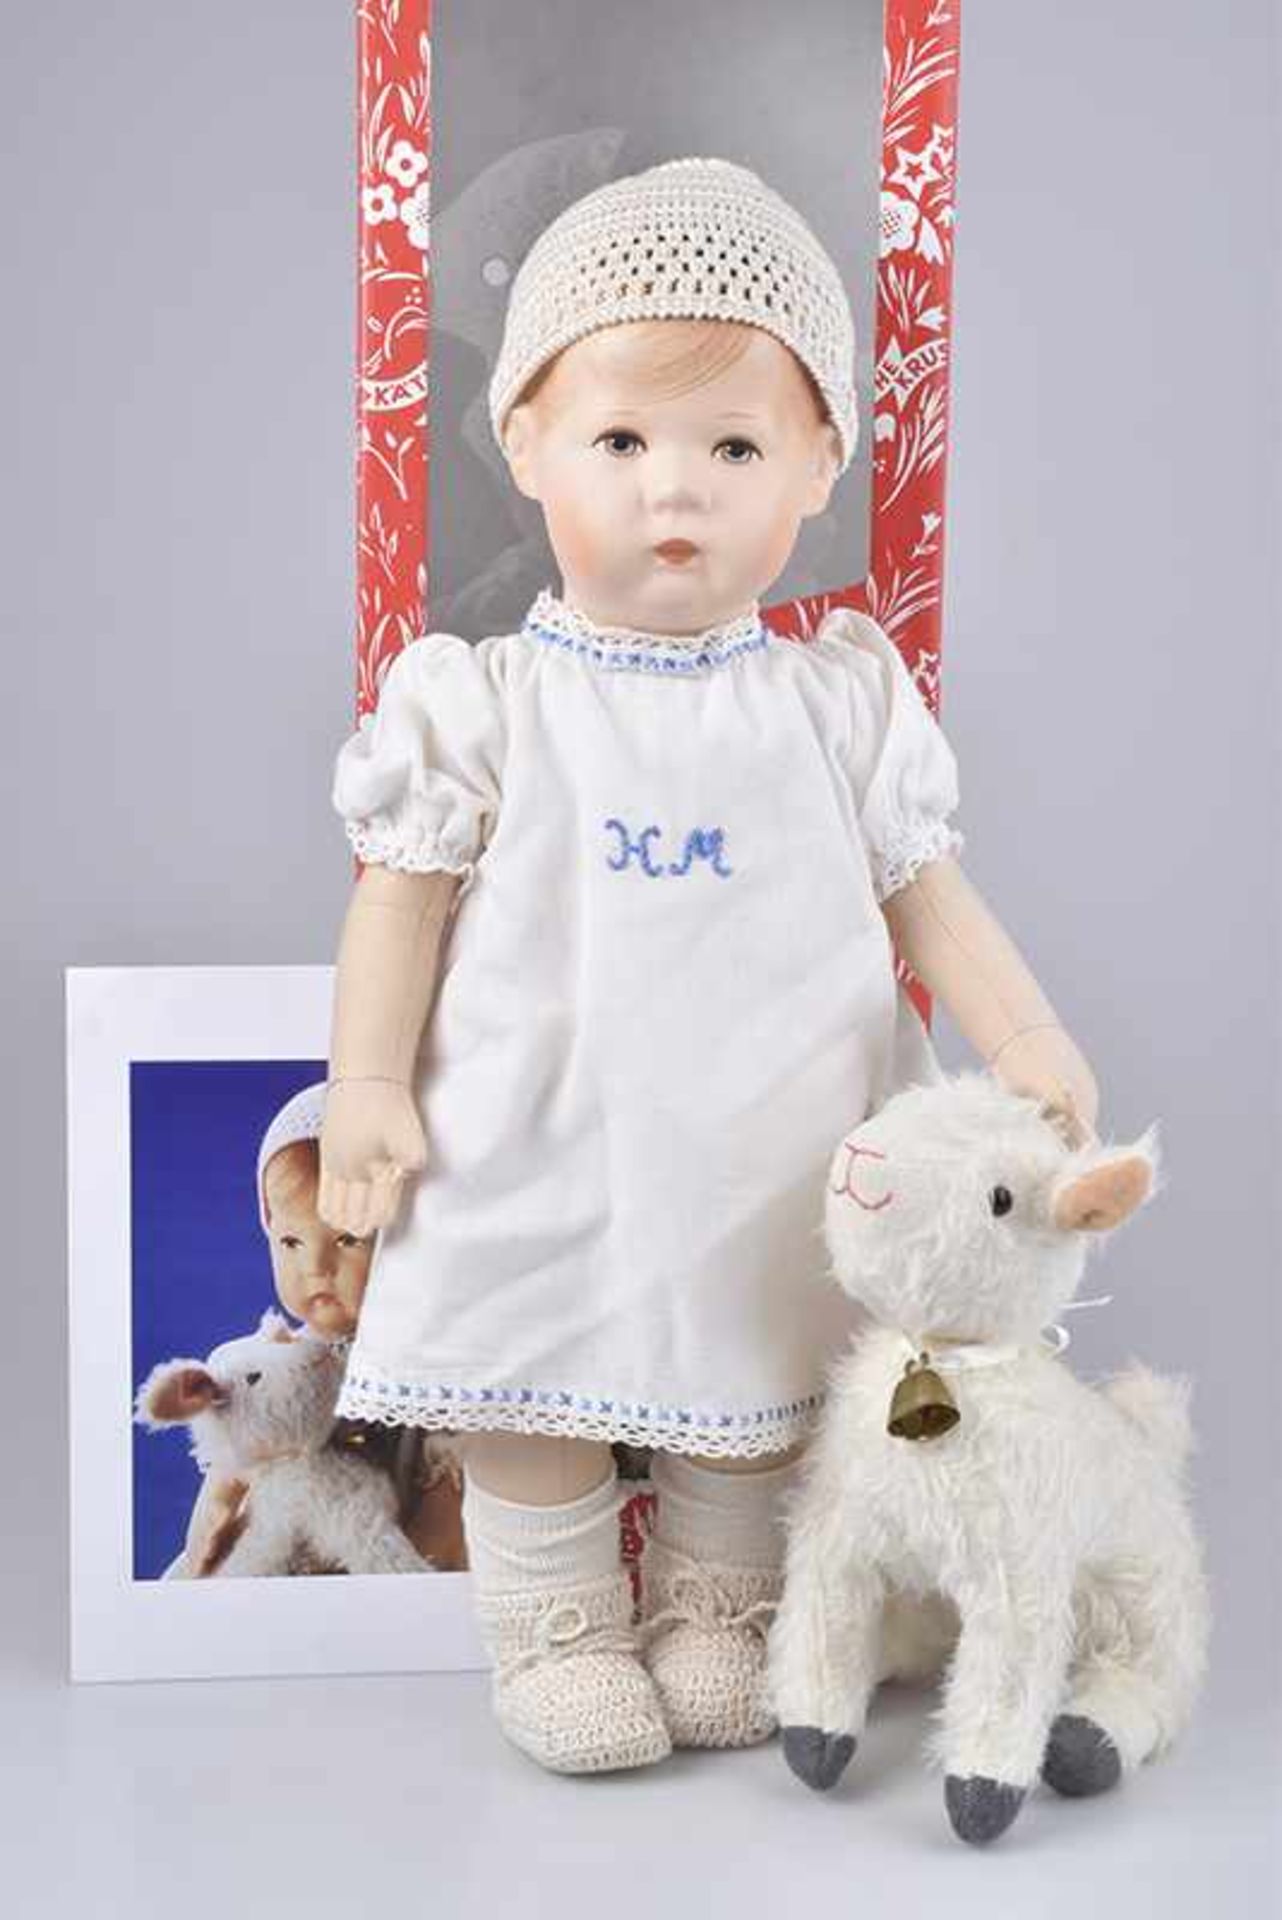 KÄTHE KRUSE Puppe "Hemdenmatz", Typ 43 H, limitierte Auflage von 2000 (258/500), mit Zertifikat,